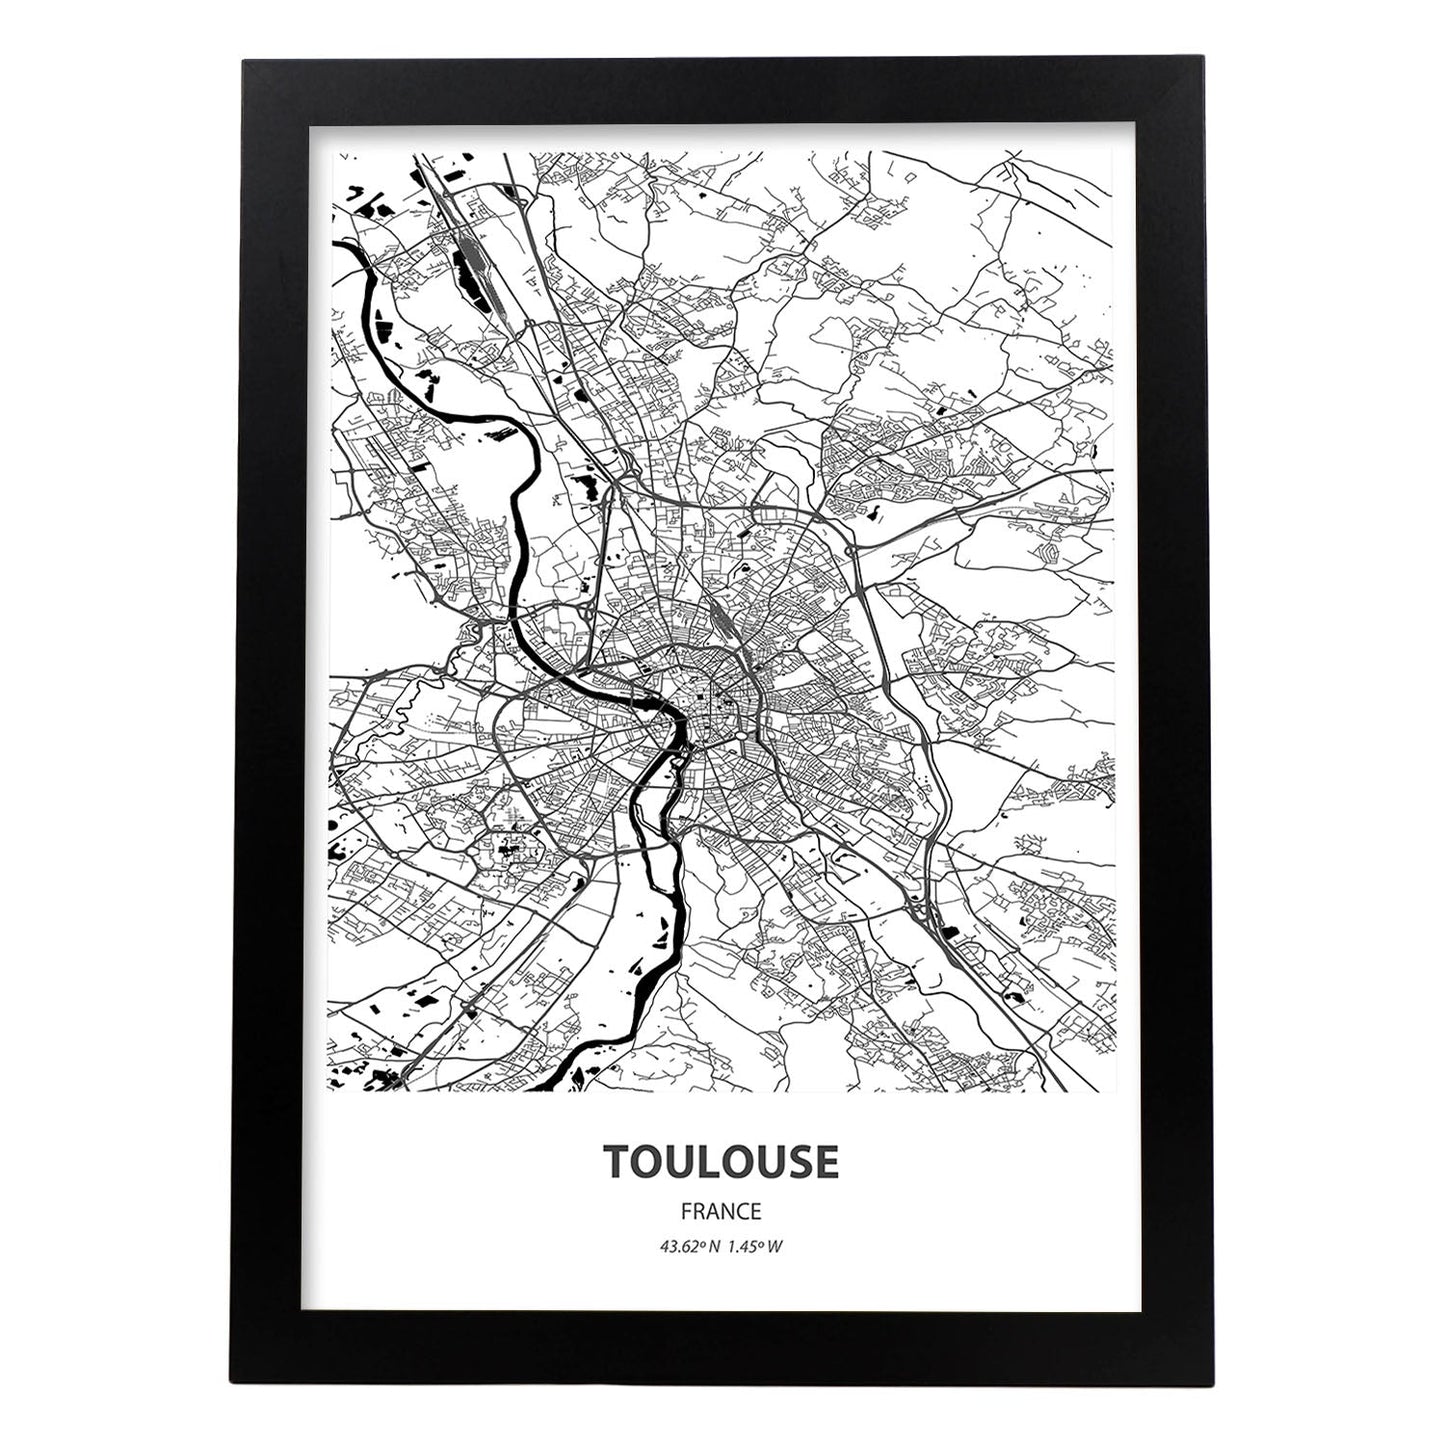 Poster con mapa de Toulouse - Francia. Láminas de ciudades de Francia con mares y ríos en color negro.-Artwork-Nacnic-A3-Marco Negro-Nacnic Estudio SL